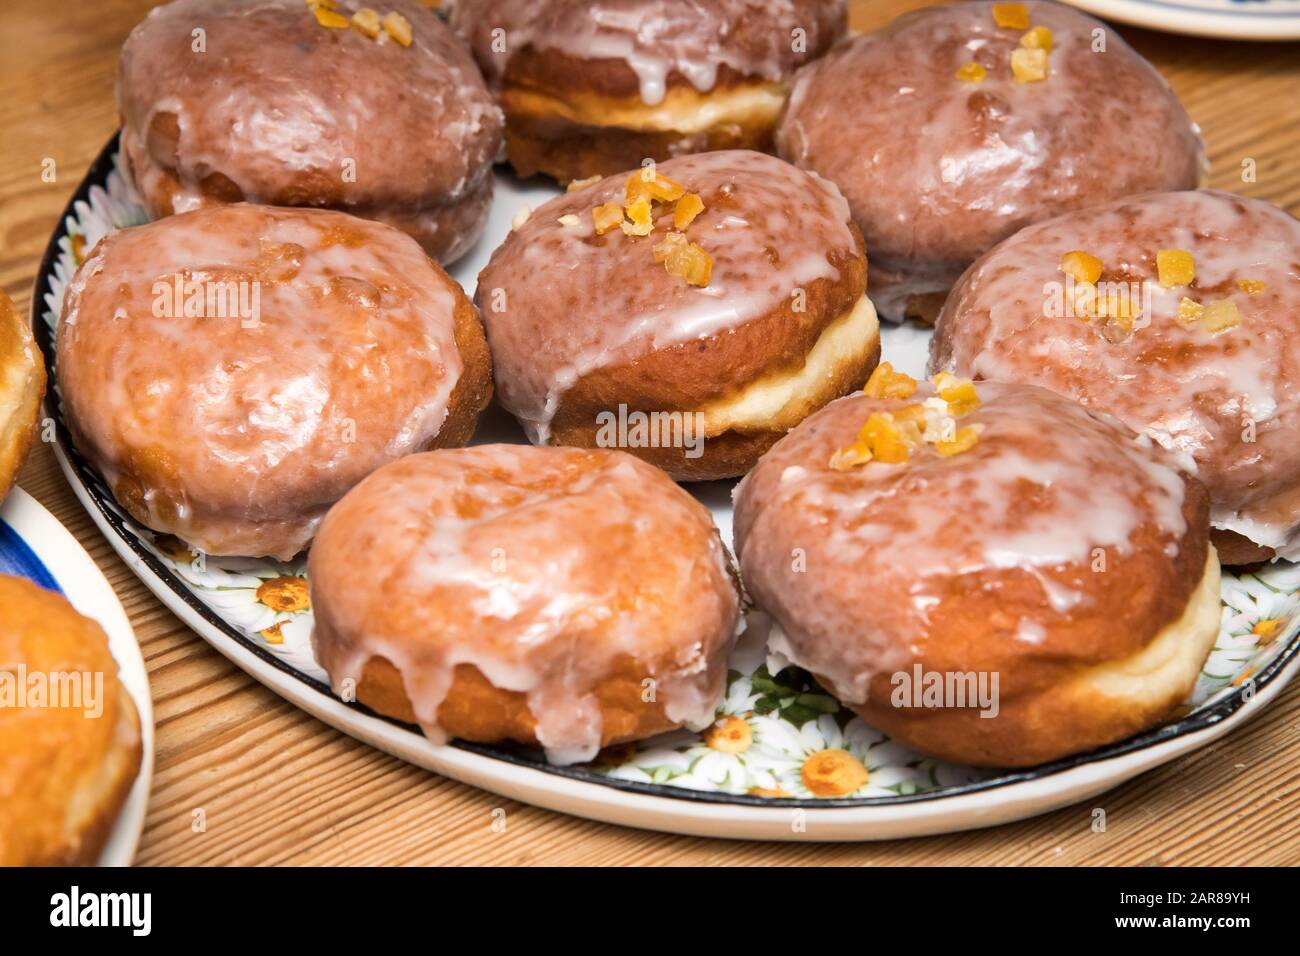 Homemade doughnuts called paczki © Wojciech Strozyk / Alamy Stock Photo Stock Photo